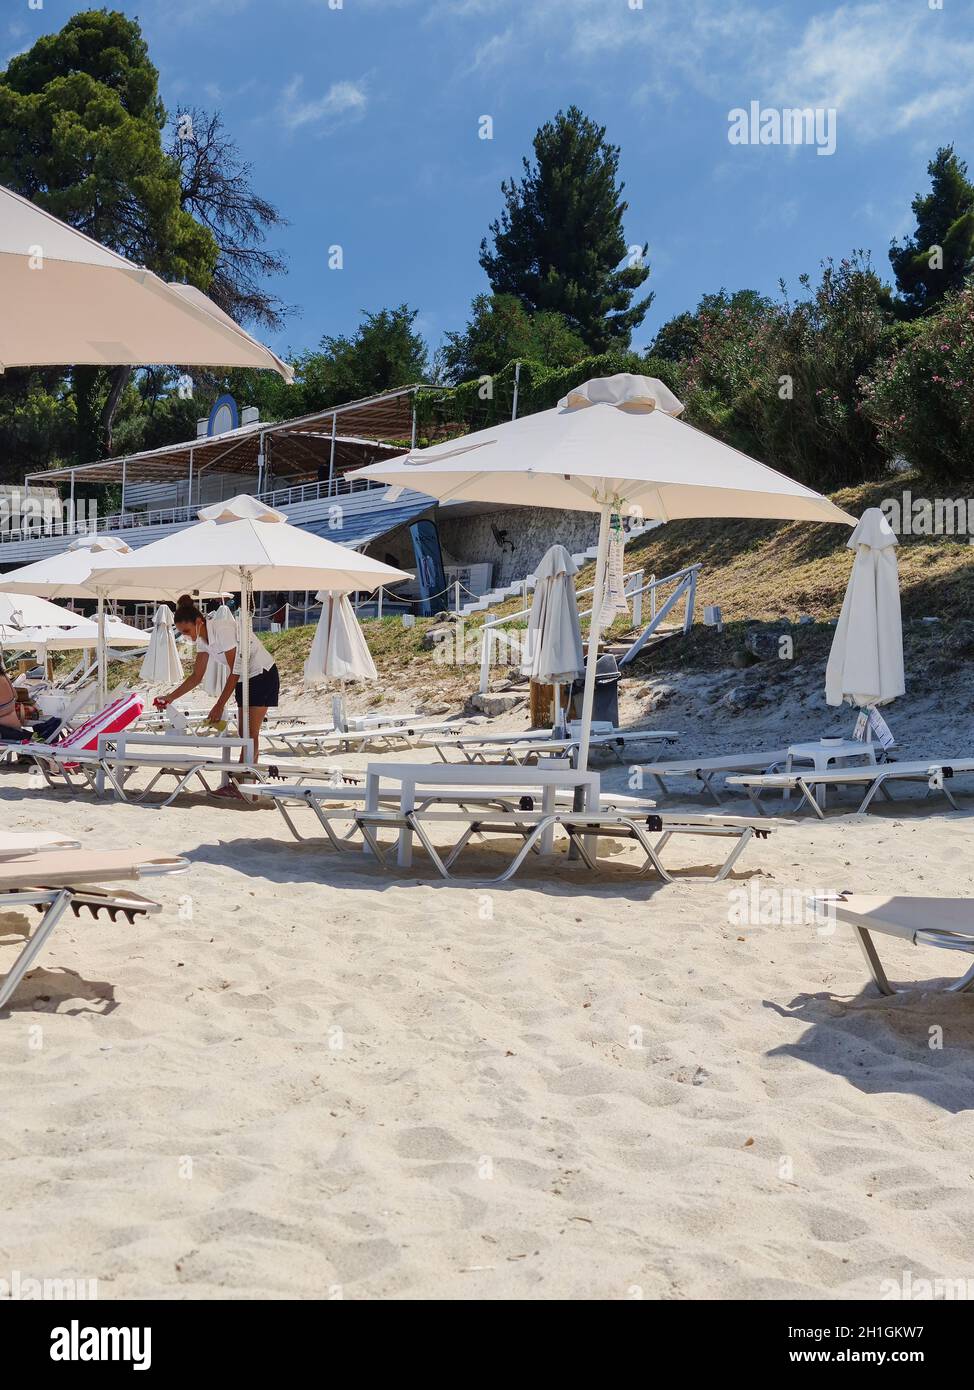 CHALKIDIKI, Grecia - Luglio 30 2020: Pulizia efficace dei mobili da spiaggia per prendere il sole per ridurre il rischio di infezioni del covid-19. Applicazione della soluzione disinfettante Foto Stock